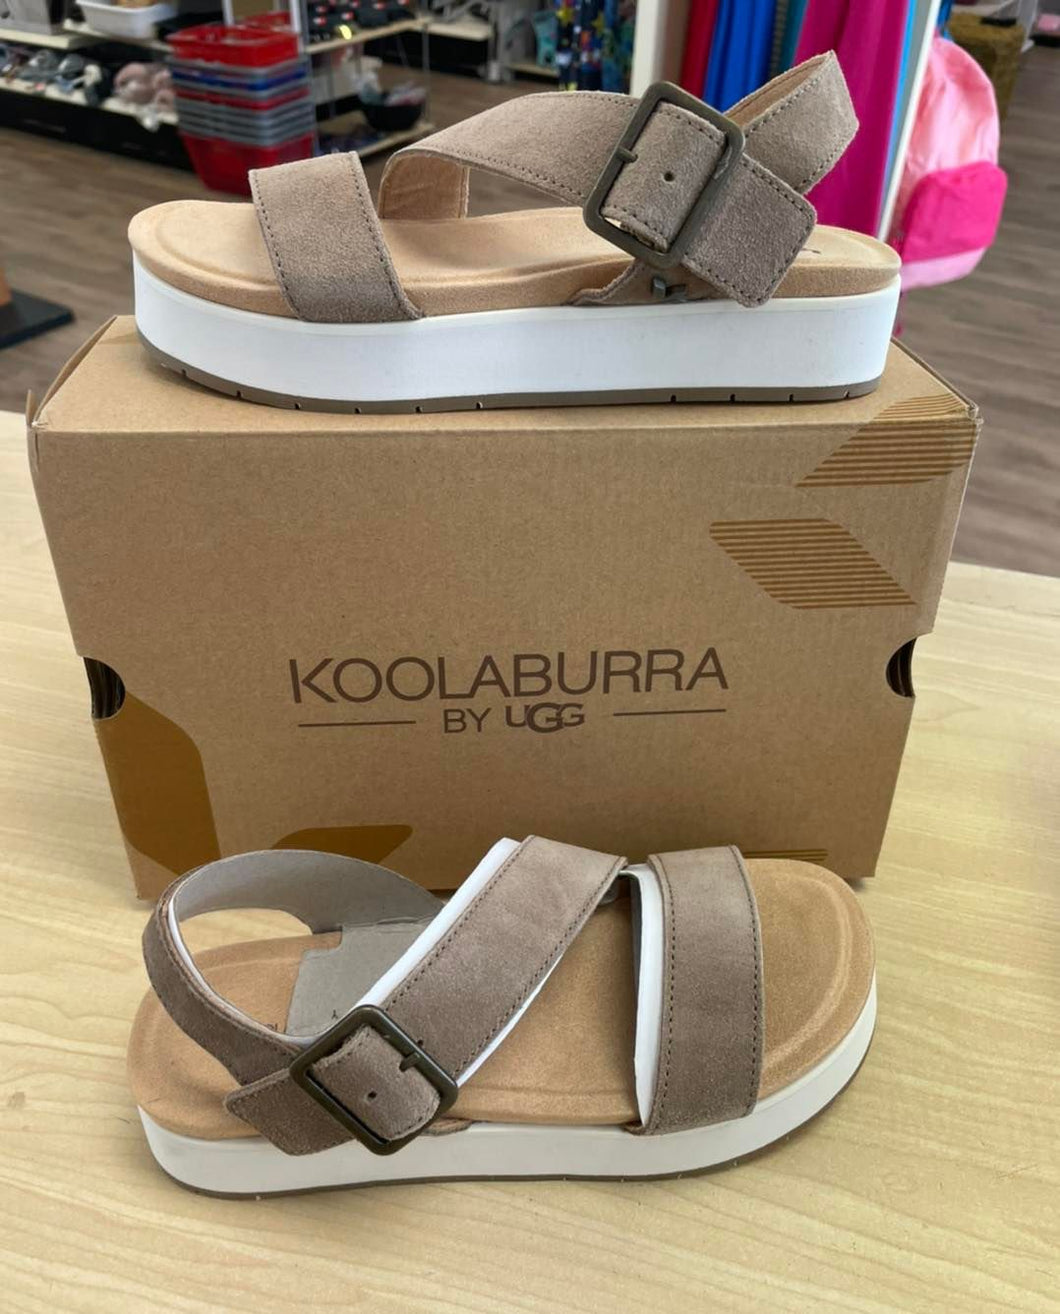 Koolaburra by Ugg suede adjustable sandals